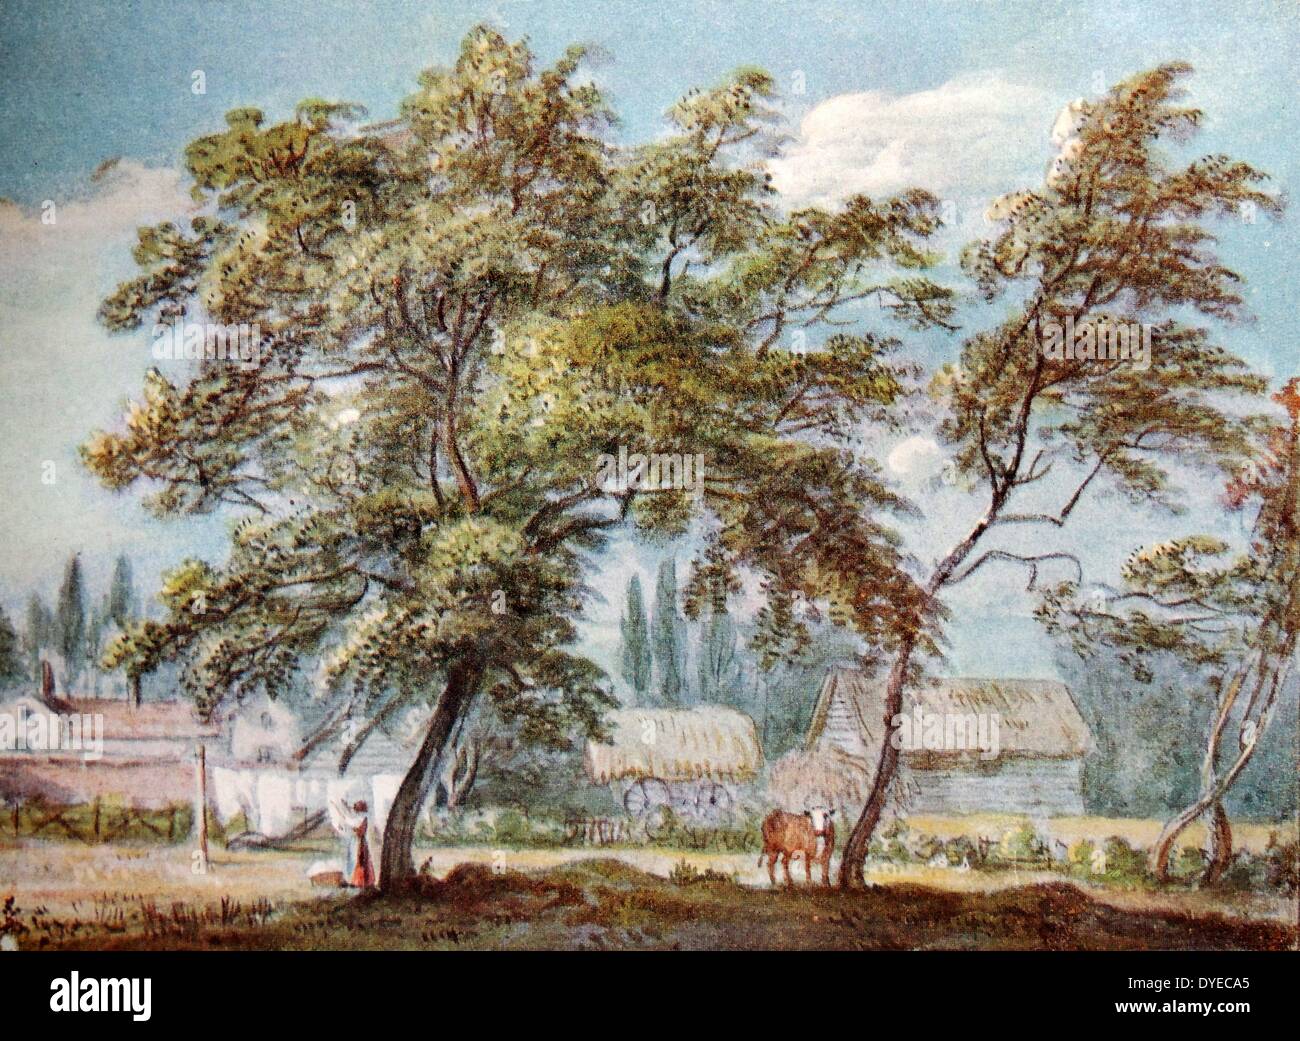 La peinture de paysage à l'aquarelle intitulée "Une Englefield Green'. Le tableau représente une femme pendaison le linge humide, à l'extérieur de sa ferme, dans un champ à côté d'une vache brune. Par Paul Sandby (1731 - 1809) de l'eau anglais-coloriste et peintre de paysages. Datée 1771 Banque D'Images